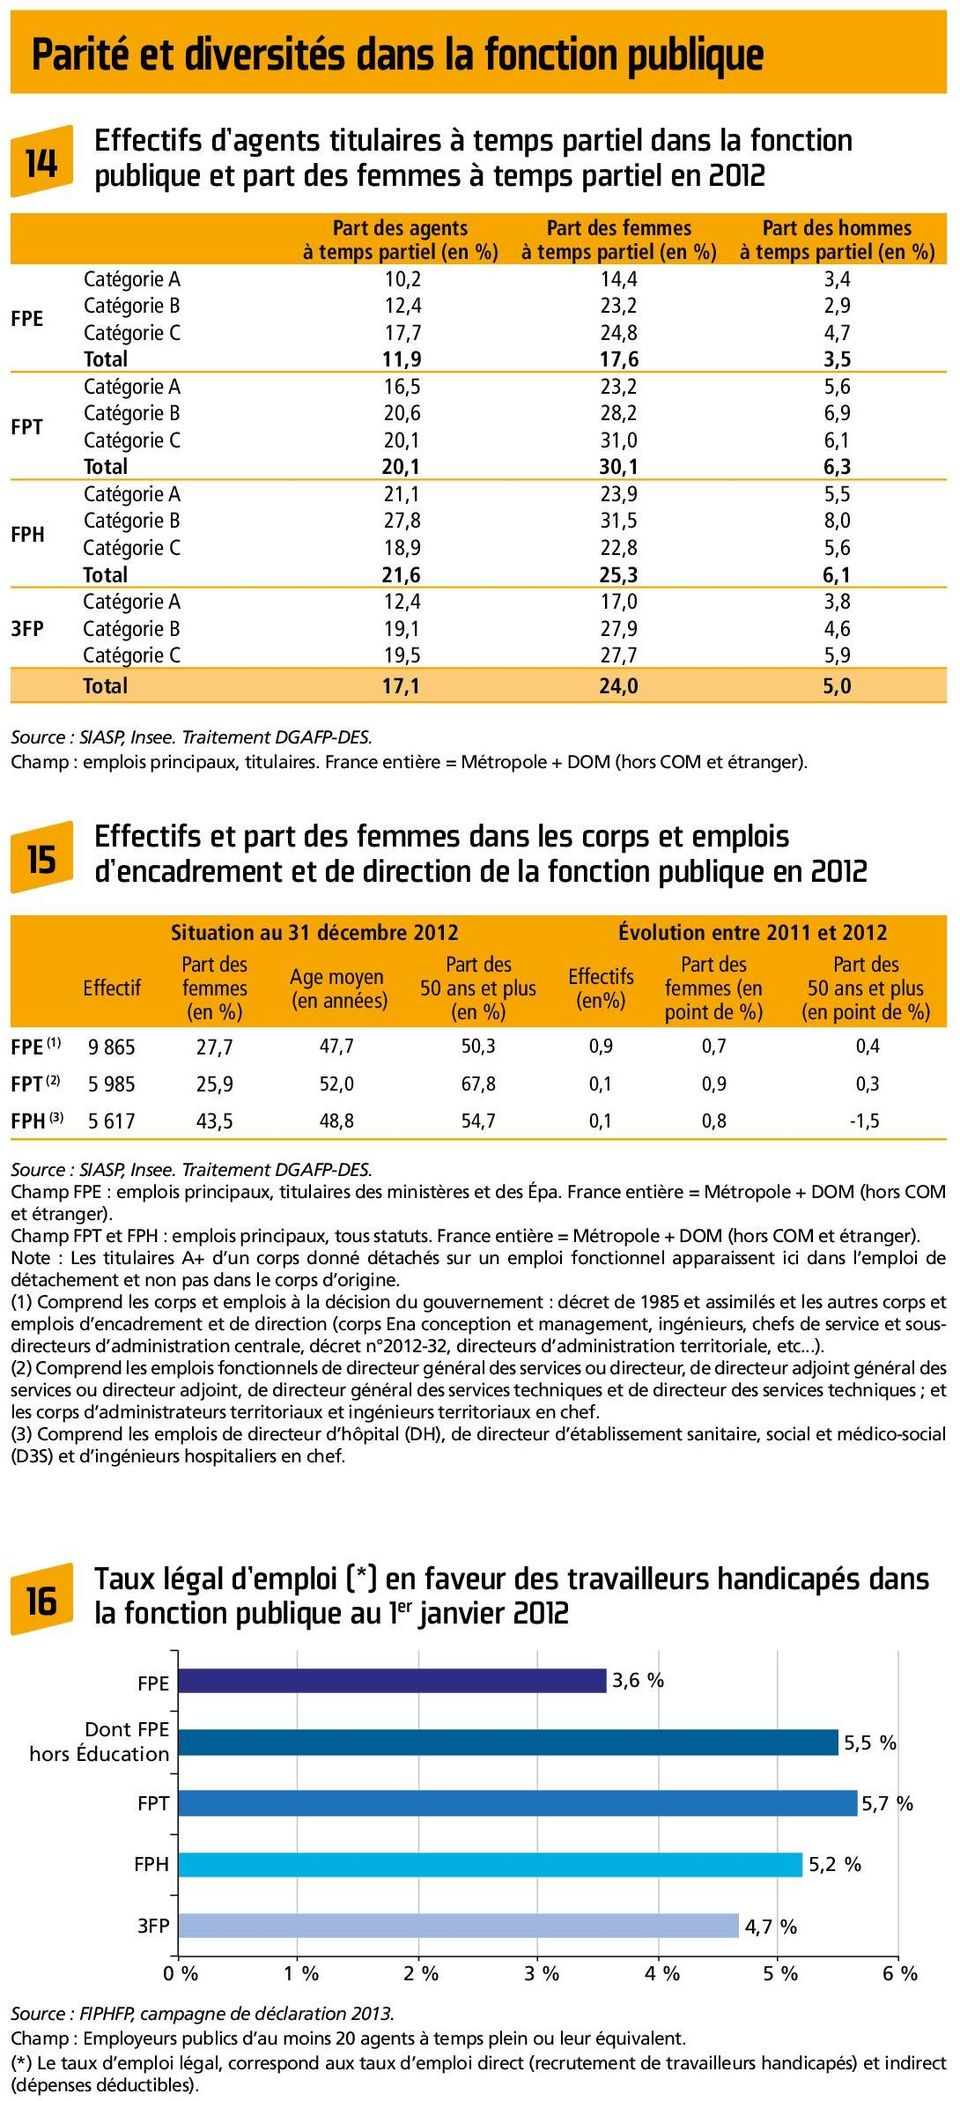 Traitement Dares et DGAFP, département des études et des statistiques. Champ : France, salariés.